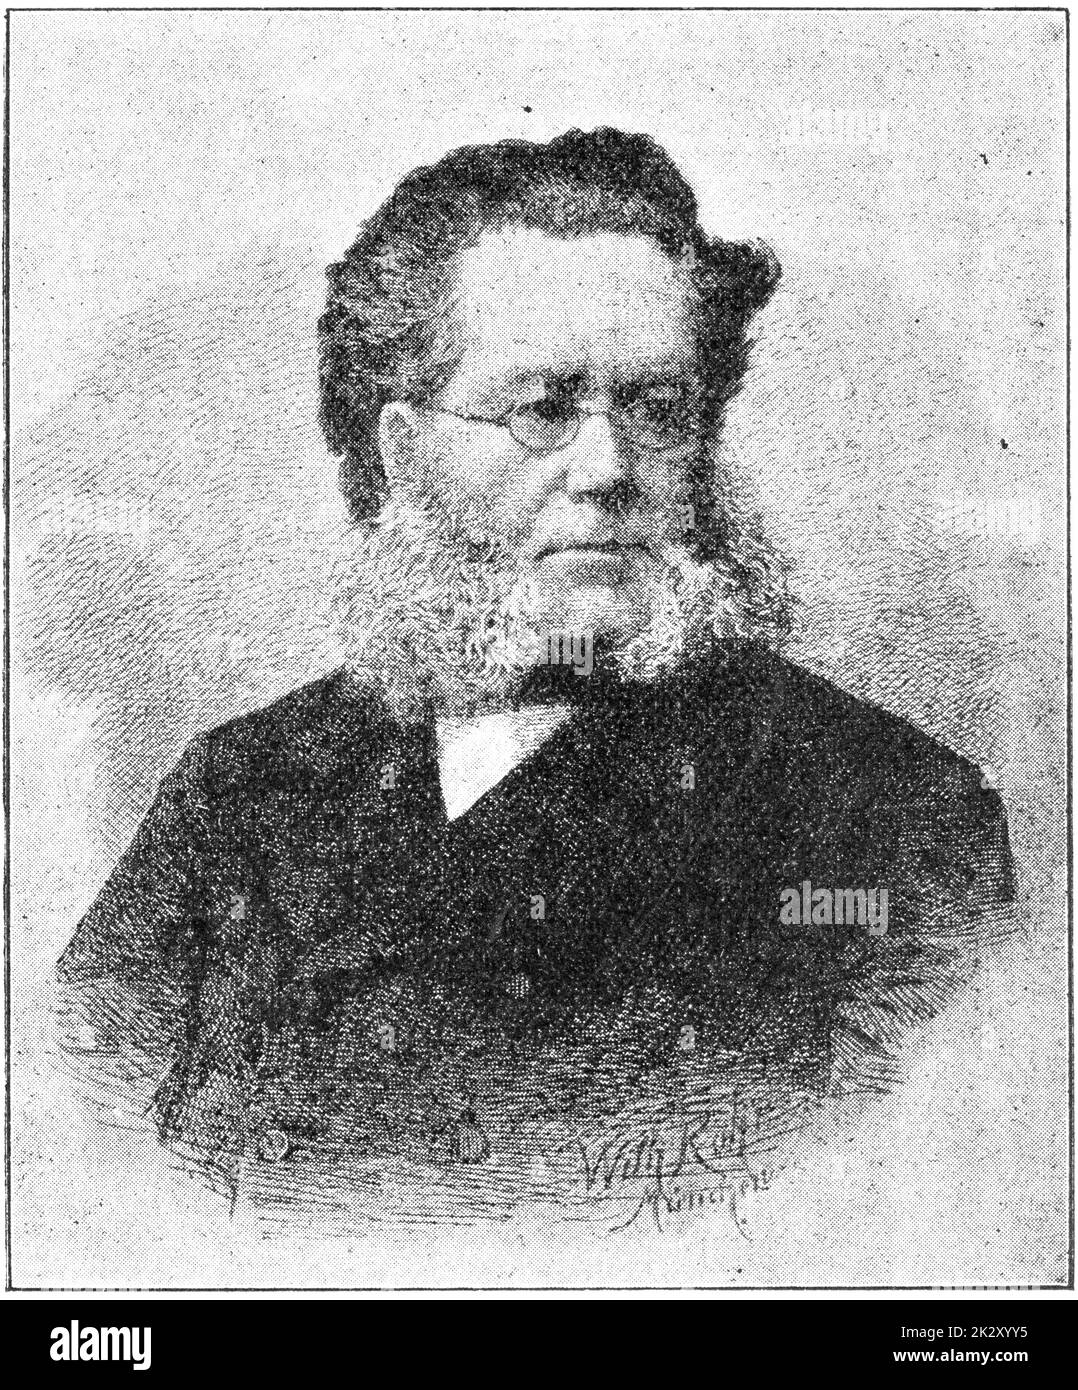 Porträt von Henrik Johan Ibsen - einem norwegischen Dramatiker und Theaterregisseur. Illustration des 19. Jahrhunderts. Weißer Hintergrund. Stockfoto